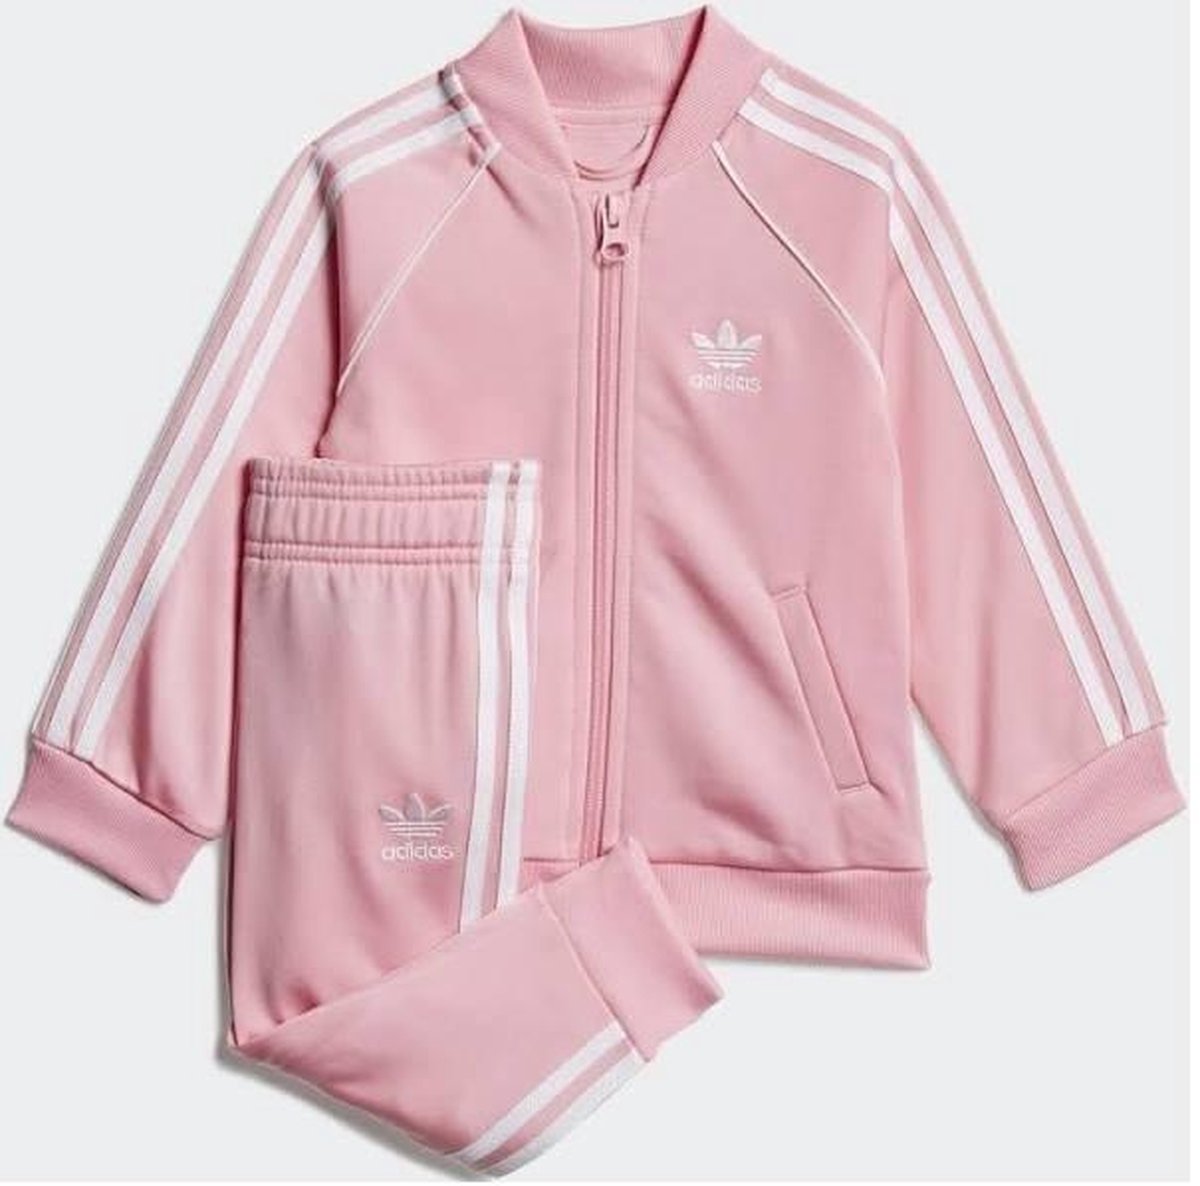 Eerlijk Alexander Graham Bell binding Adidas trainingspak meisjes roze maat 86 | bol.com